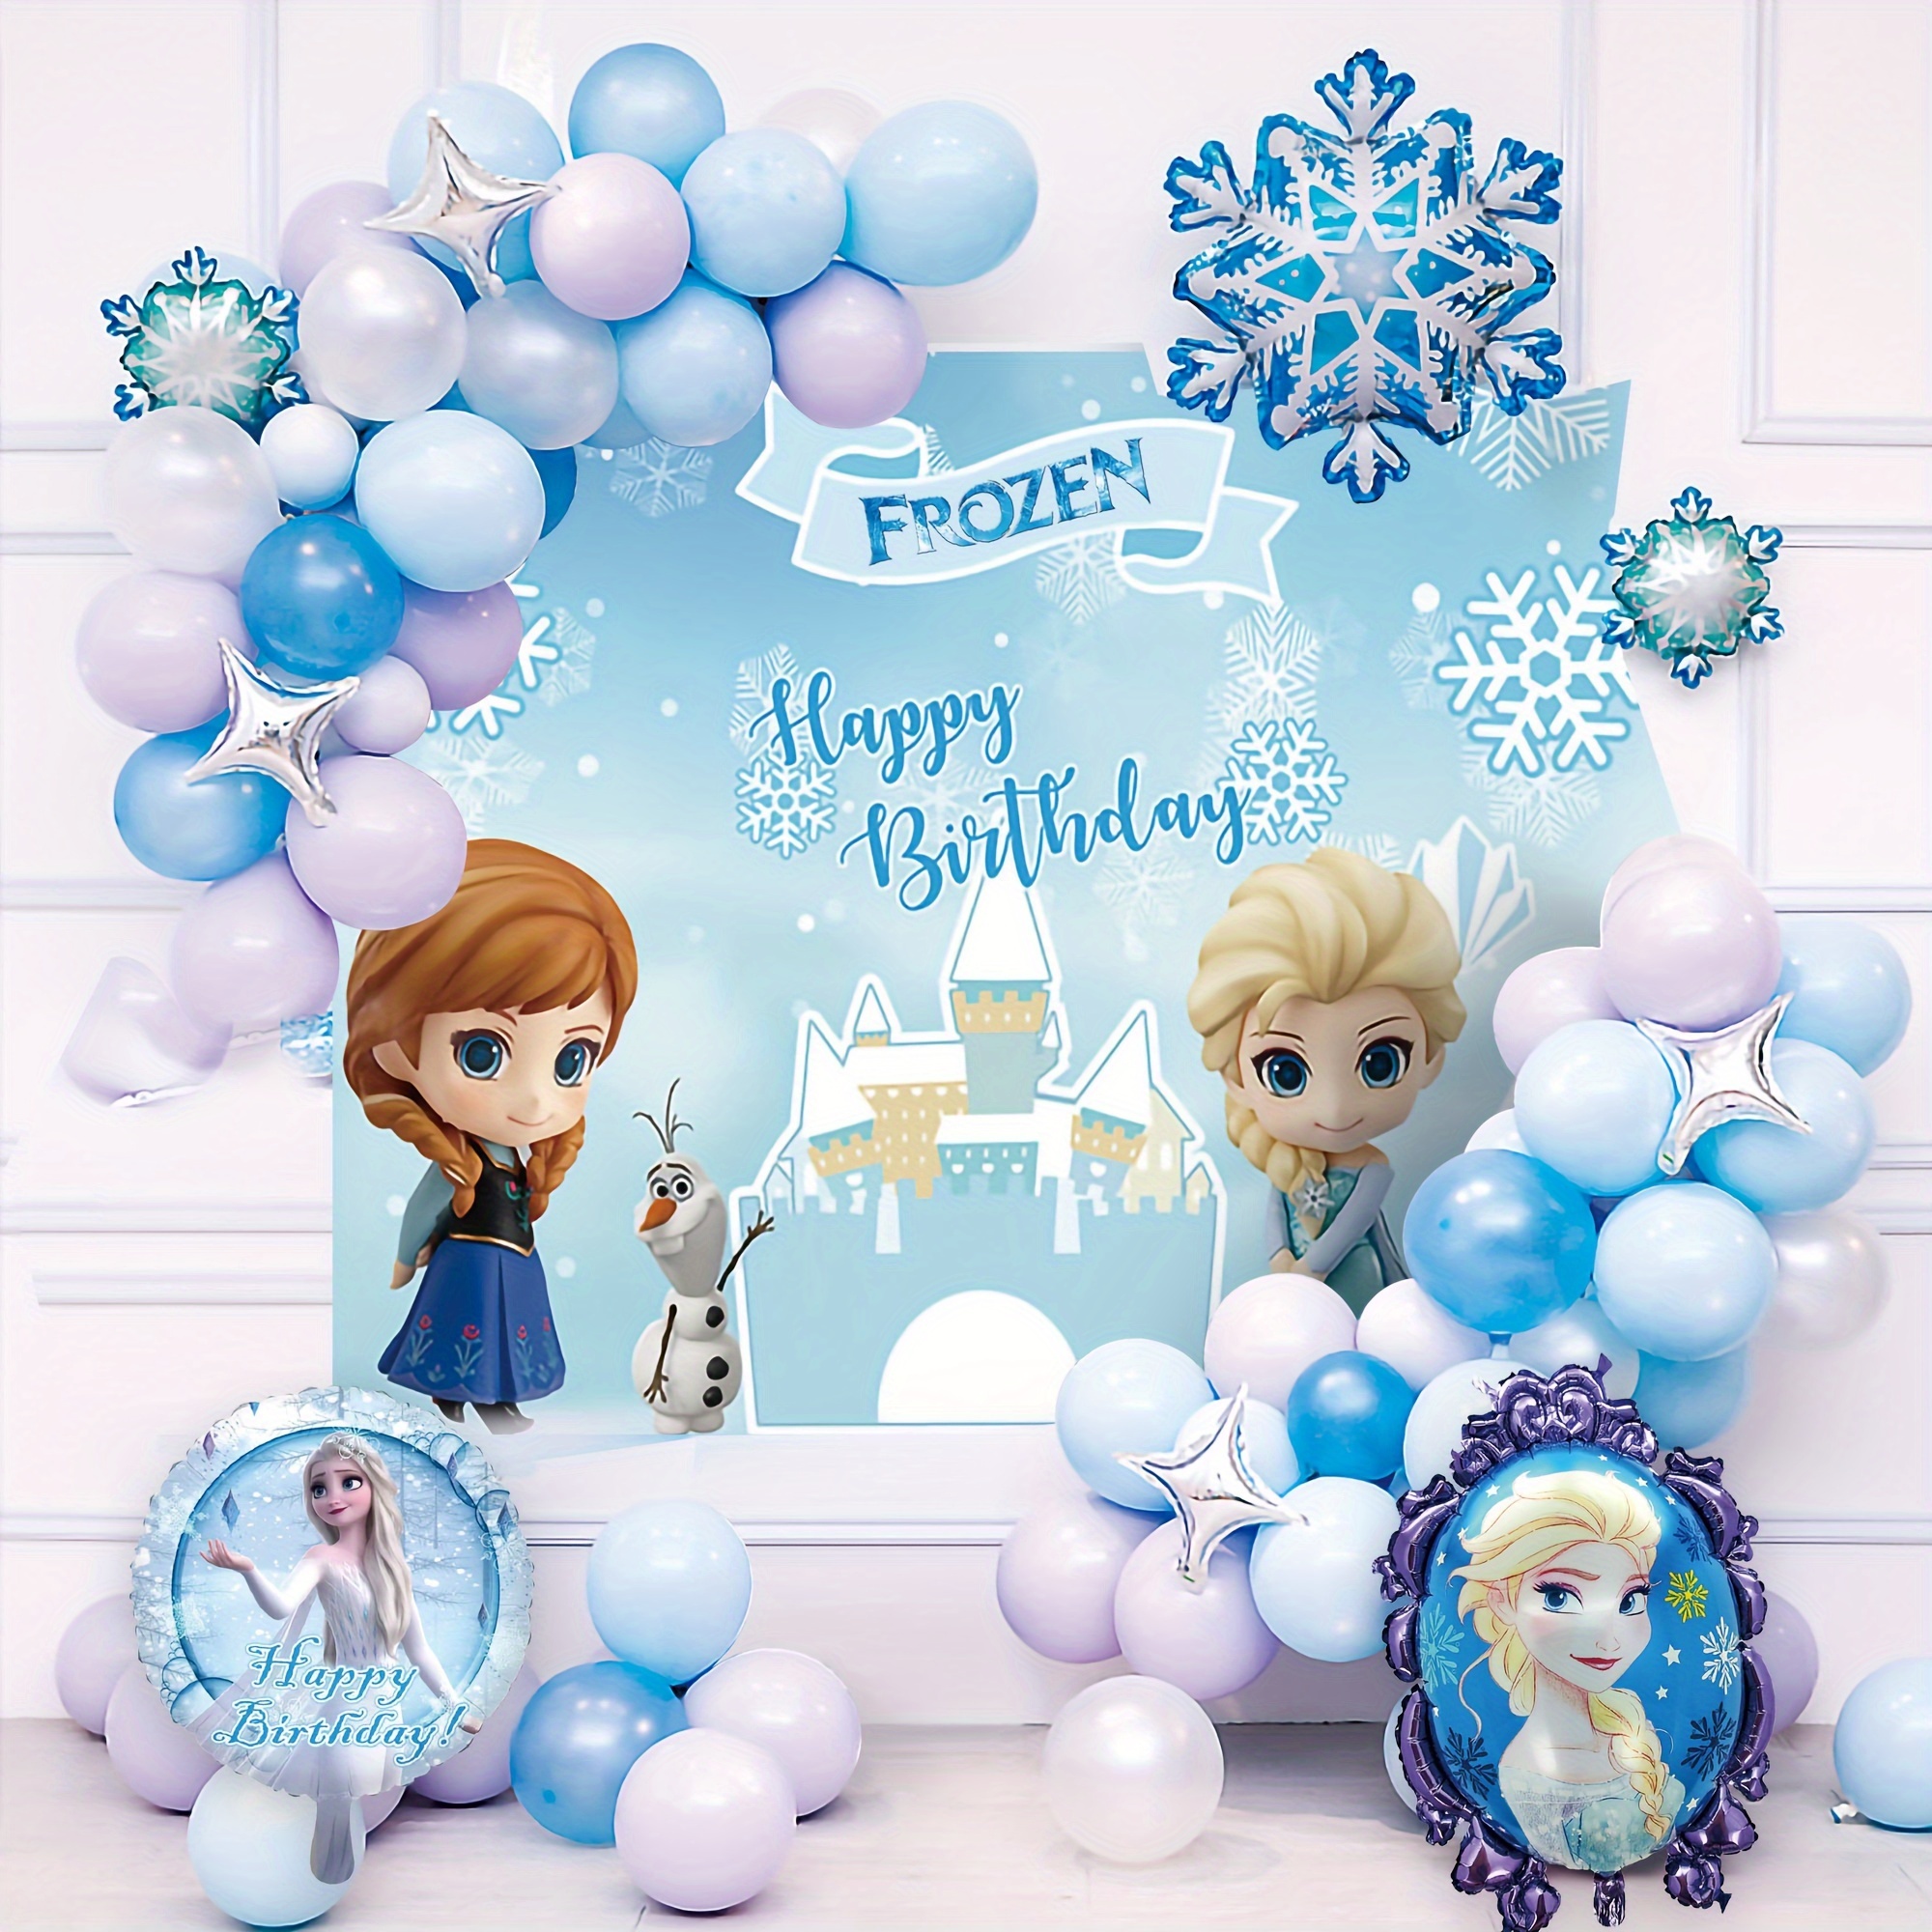 Decorazioni compleanno Frozen per 8 persone. Consegna express